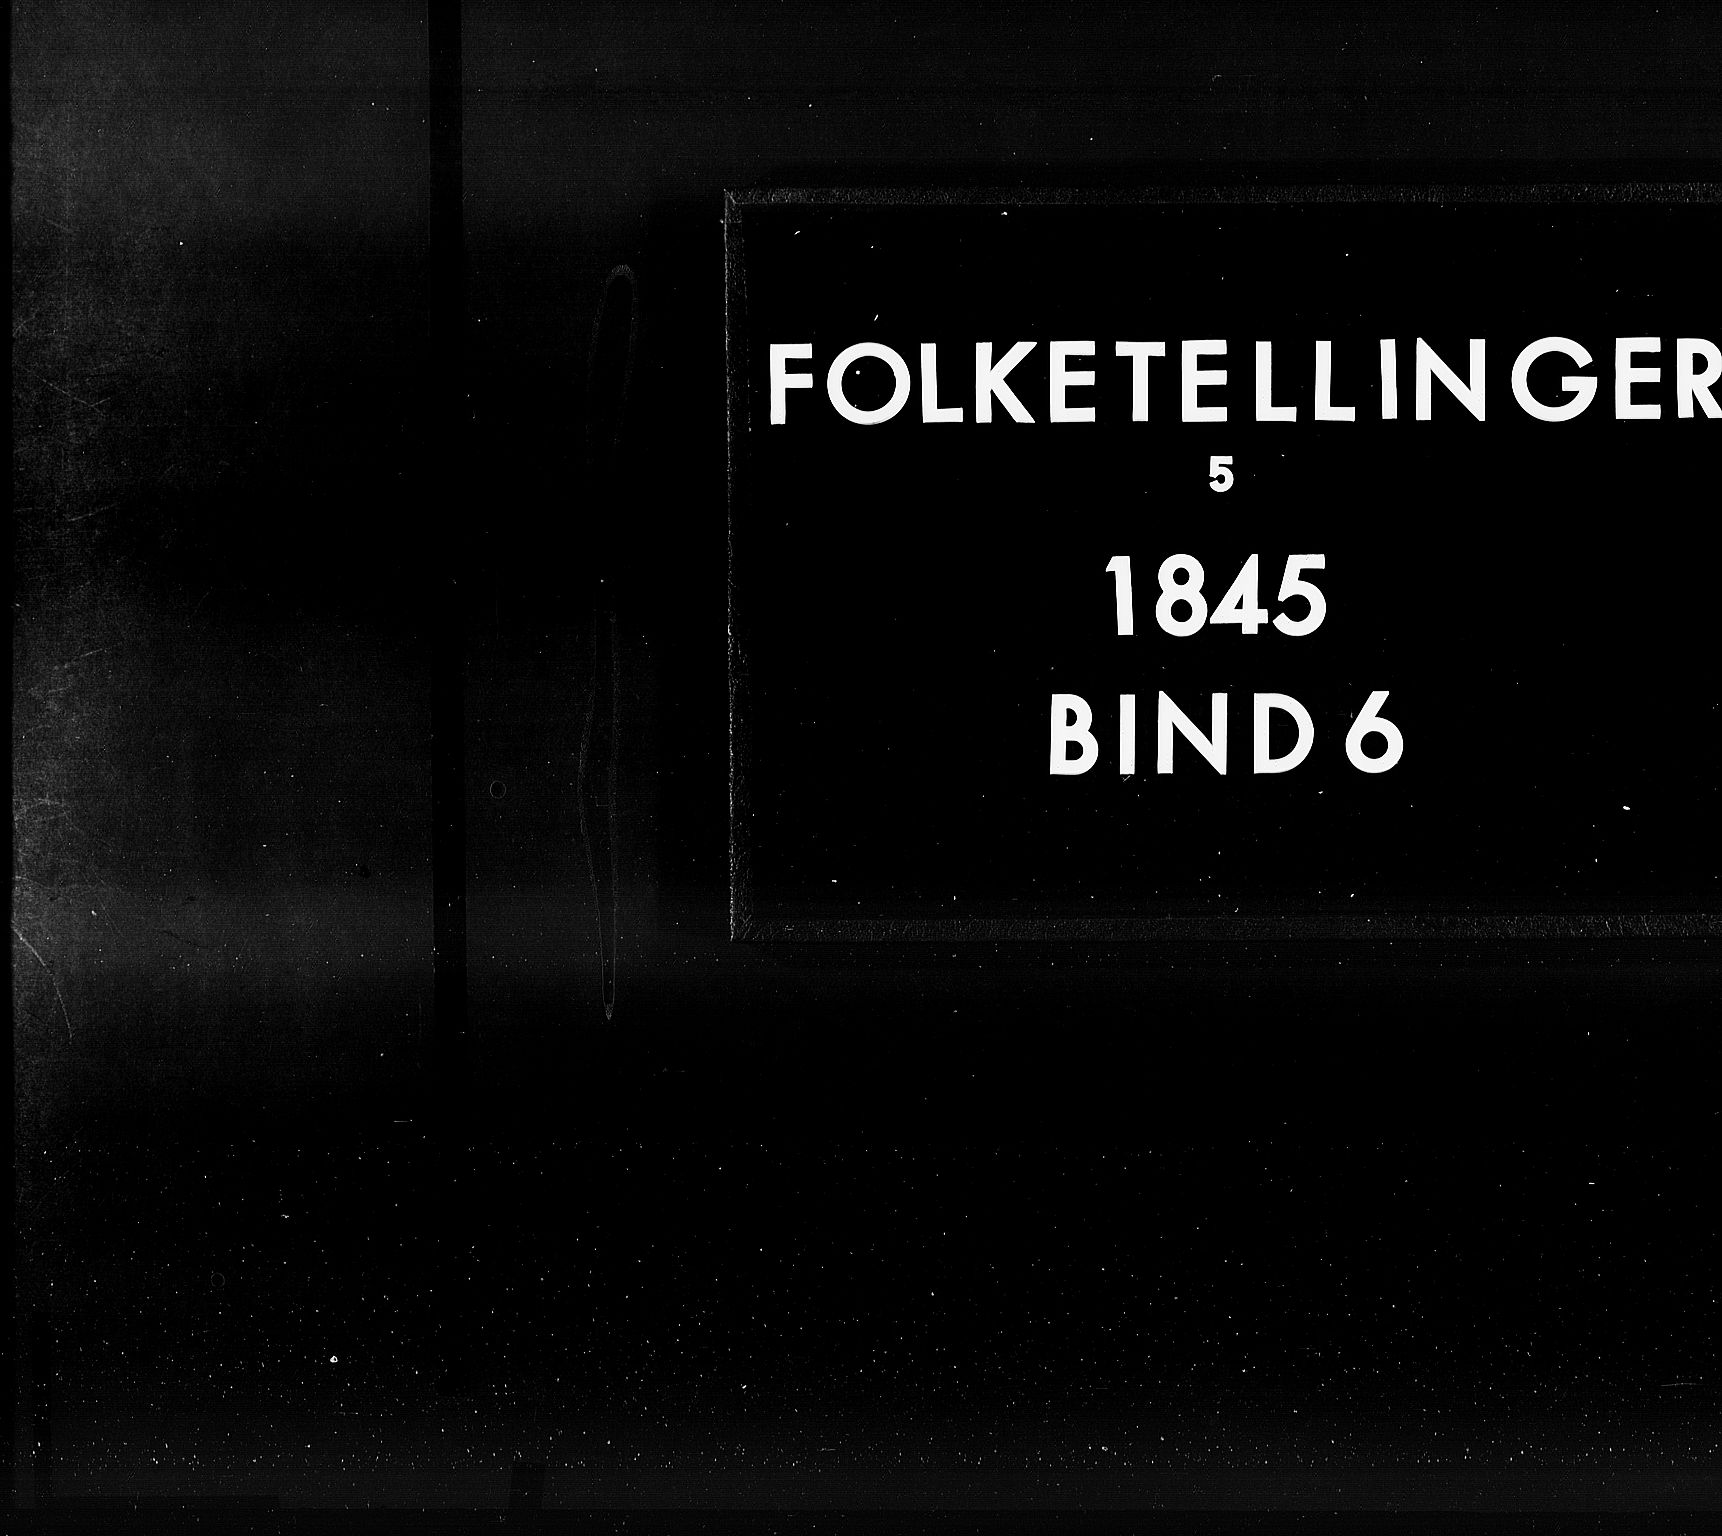 RA, Folketellingen 1845, bind 6: Lister og Mandal amt og Stavanger amt, 1845